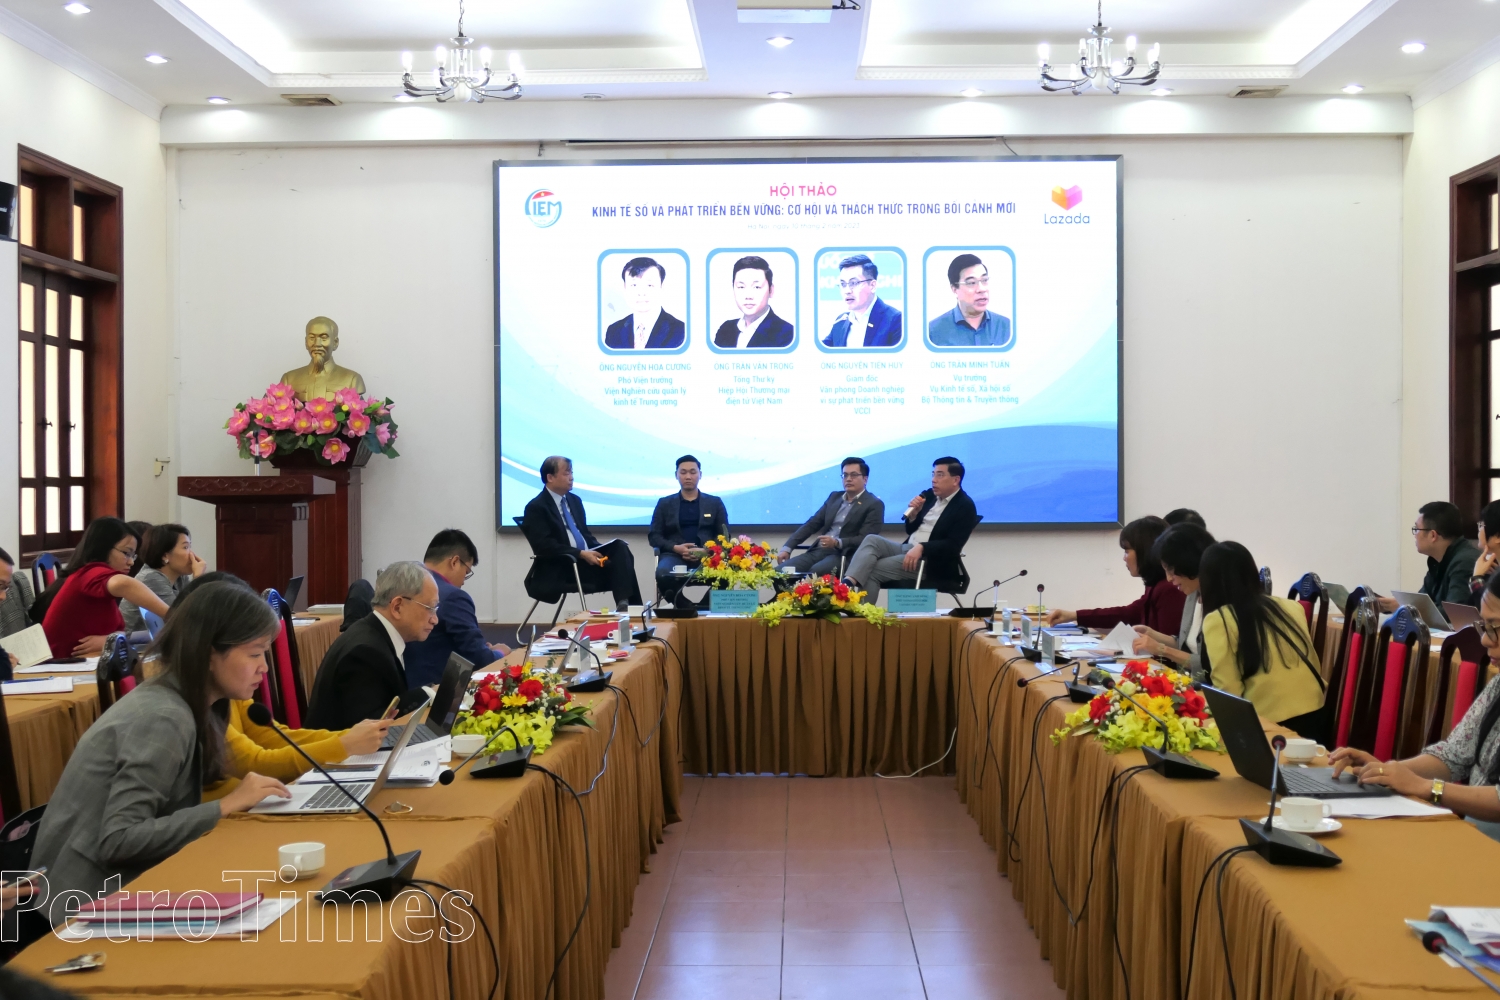 Kinh tế số Việt Nam - Cơ hội và thách thức trong bối cảnh đẩy mạnh phát triển bền vững